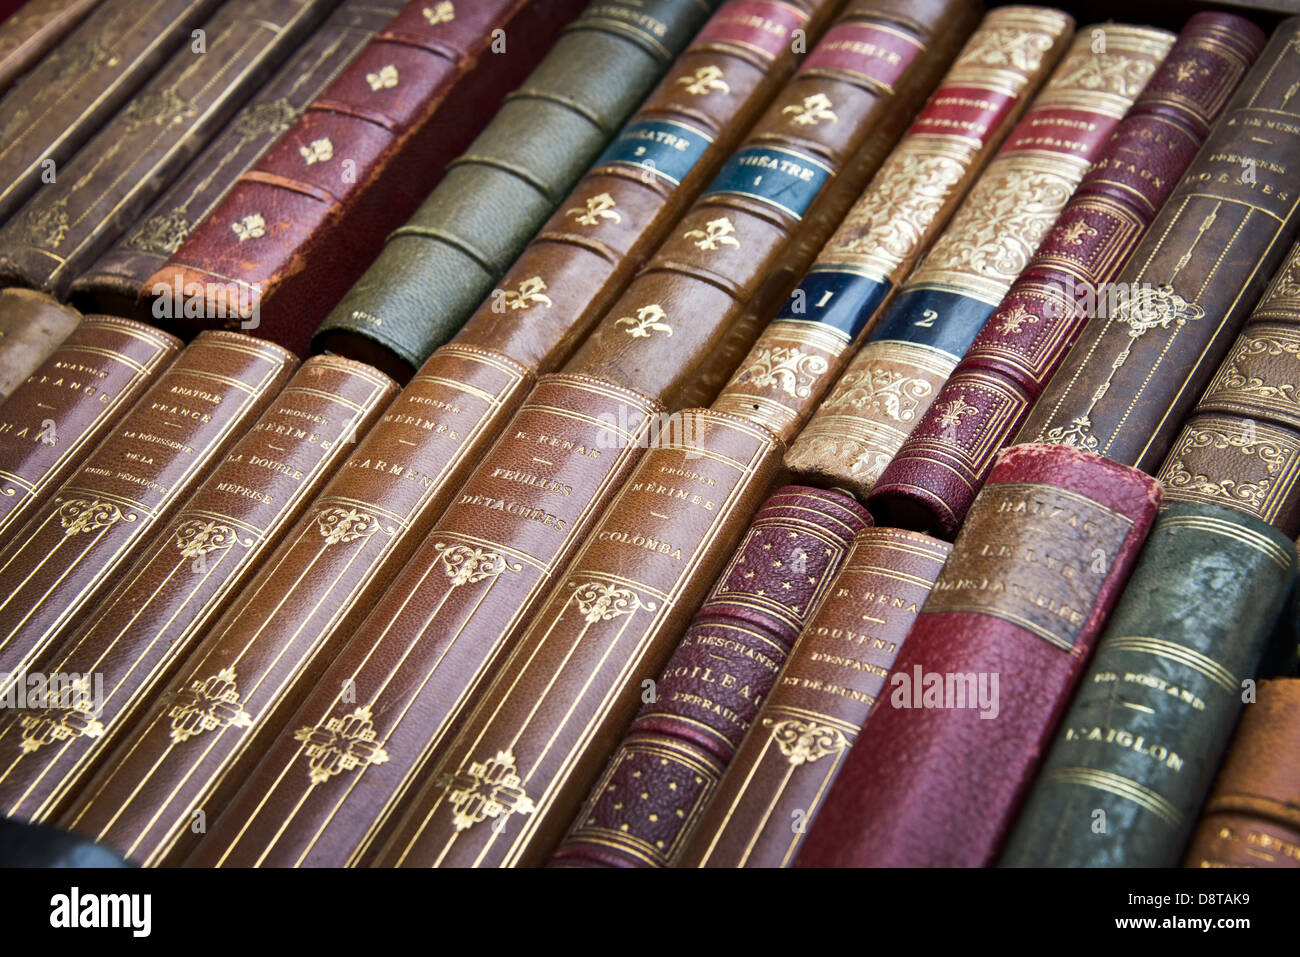 L'ancien français Livres avec couvertures en cuir Banque D'Images